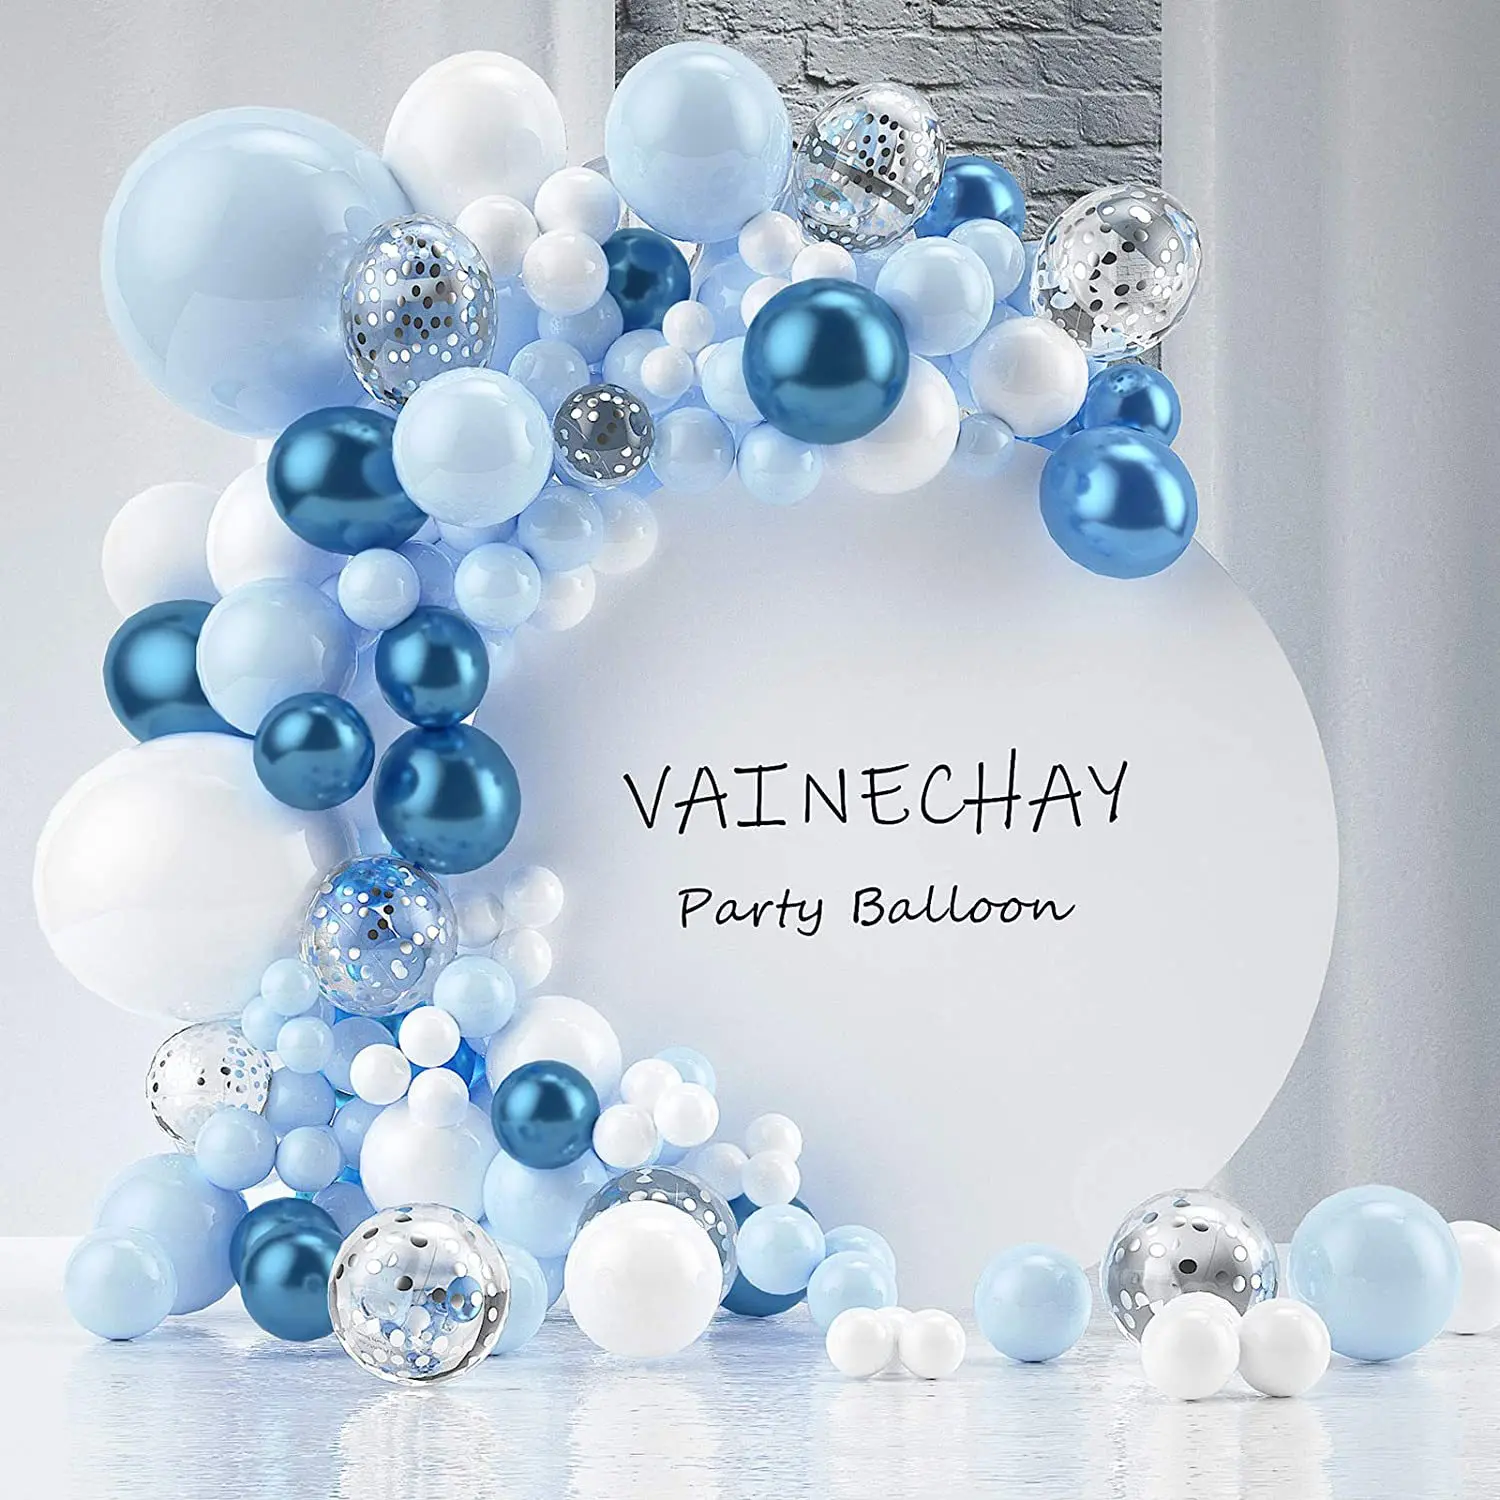 

Синий белый воздушный шар, дневной свет, фотография детской свадьбы, белый блестящий воздушный шар, помолвка, фотография